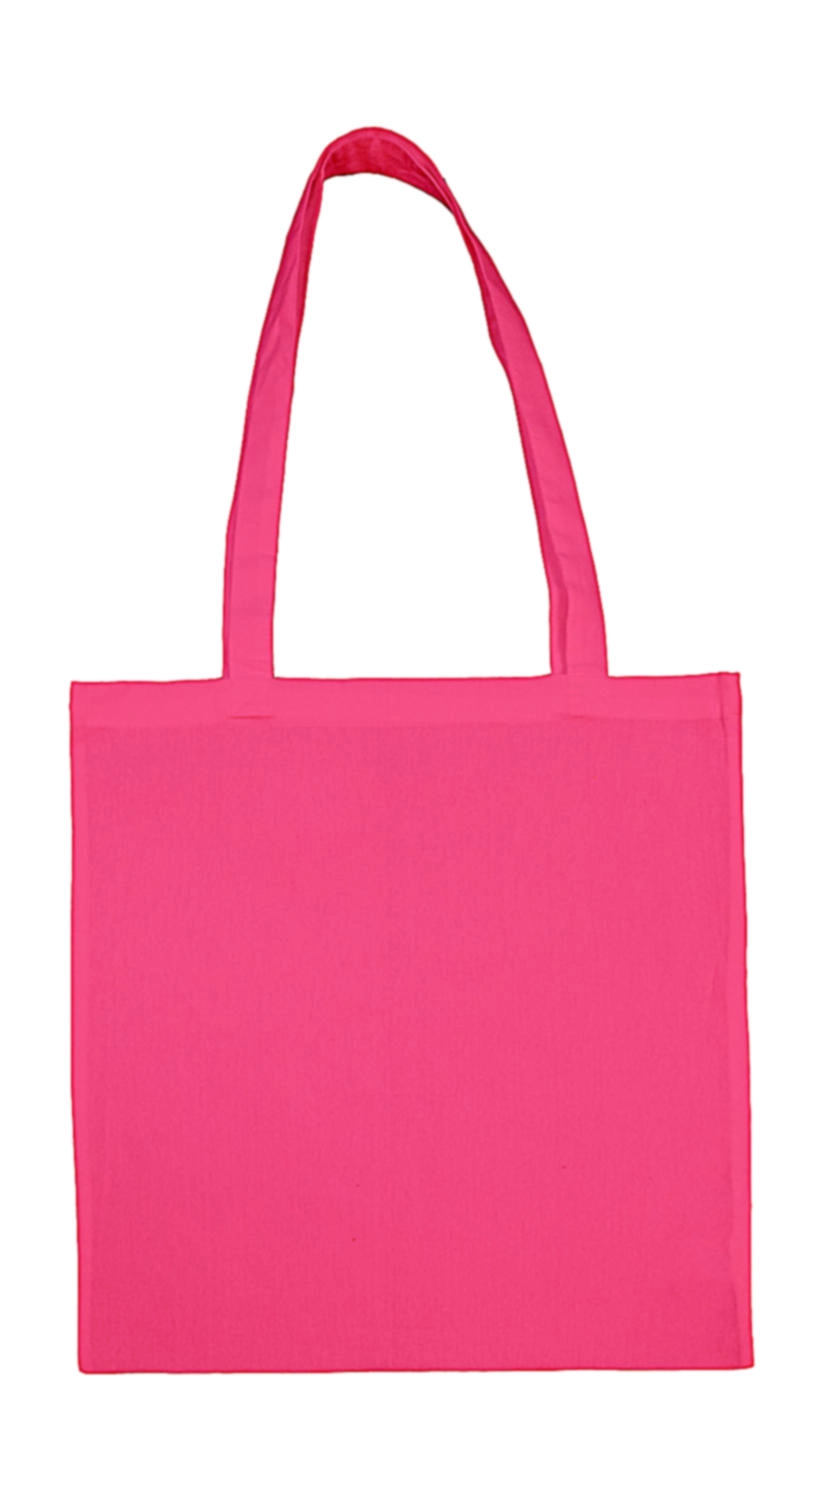 Cotton Bag LH zum Besticken und Bedrucken in der Farbe Pink mit Ihren Logo, Schriftzug oder Motiv.